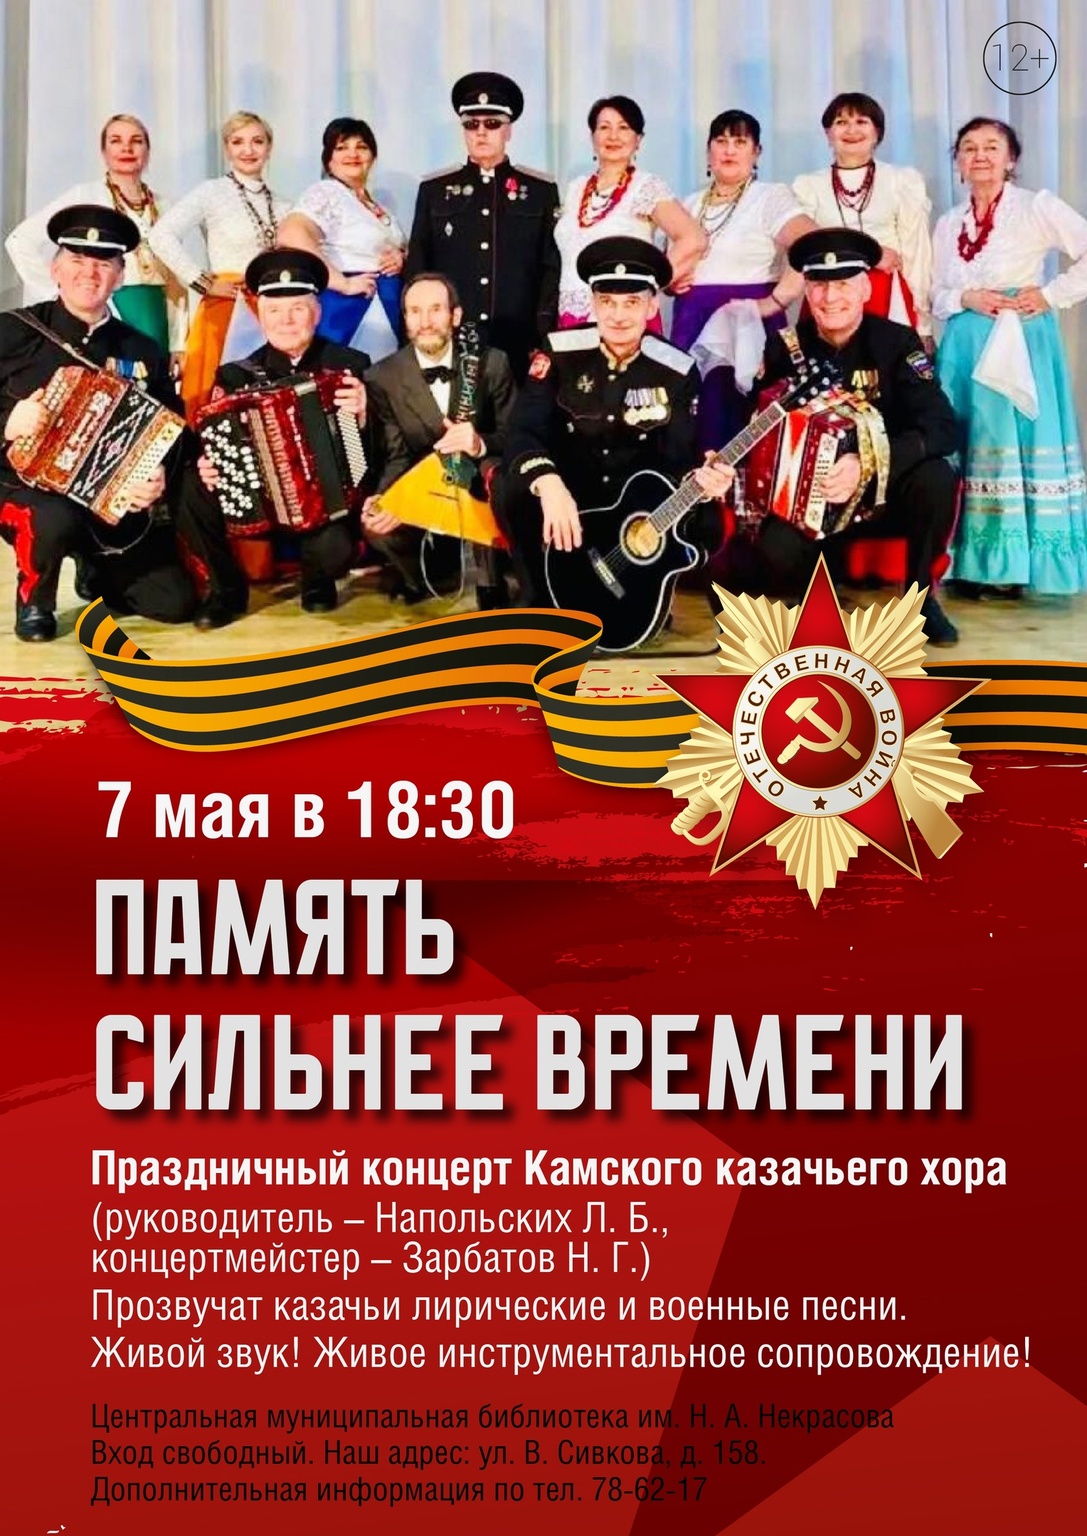 Концерт Камского казачьего хора